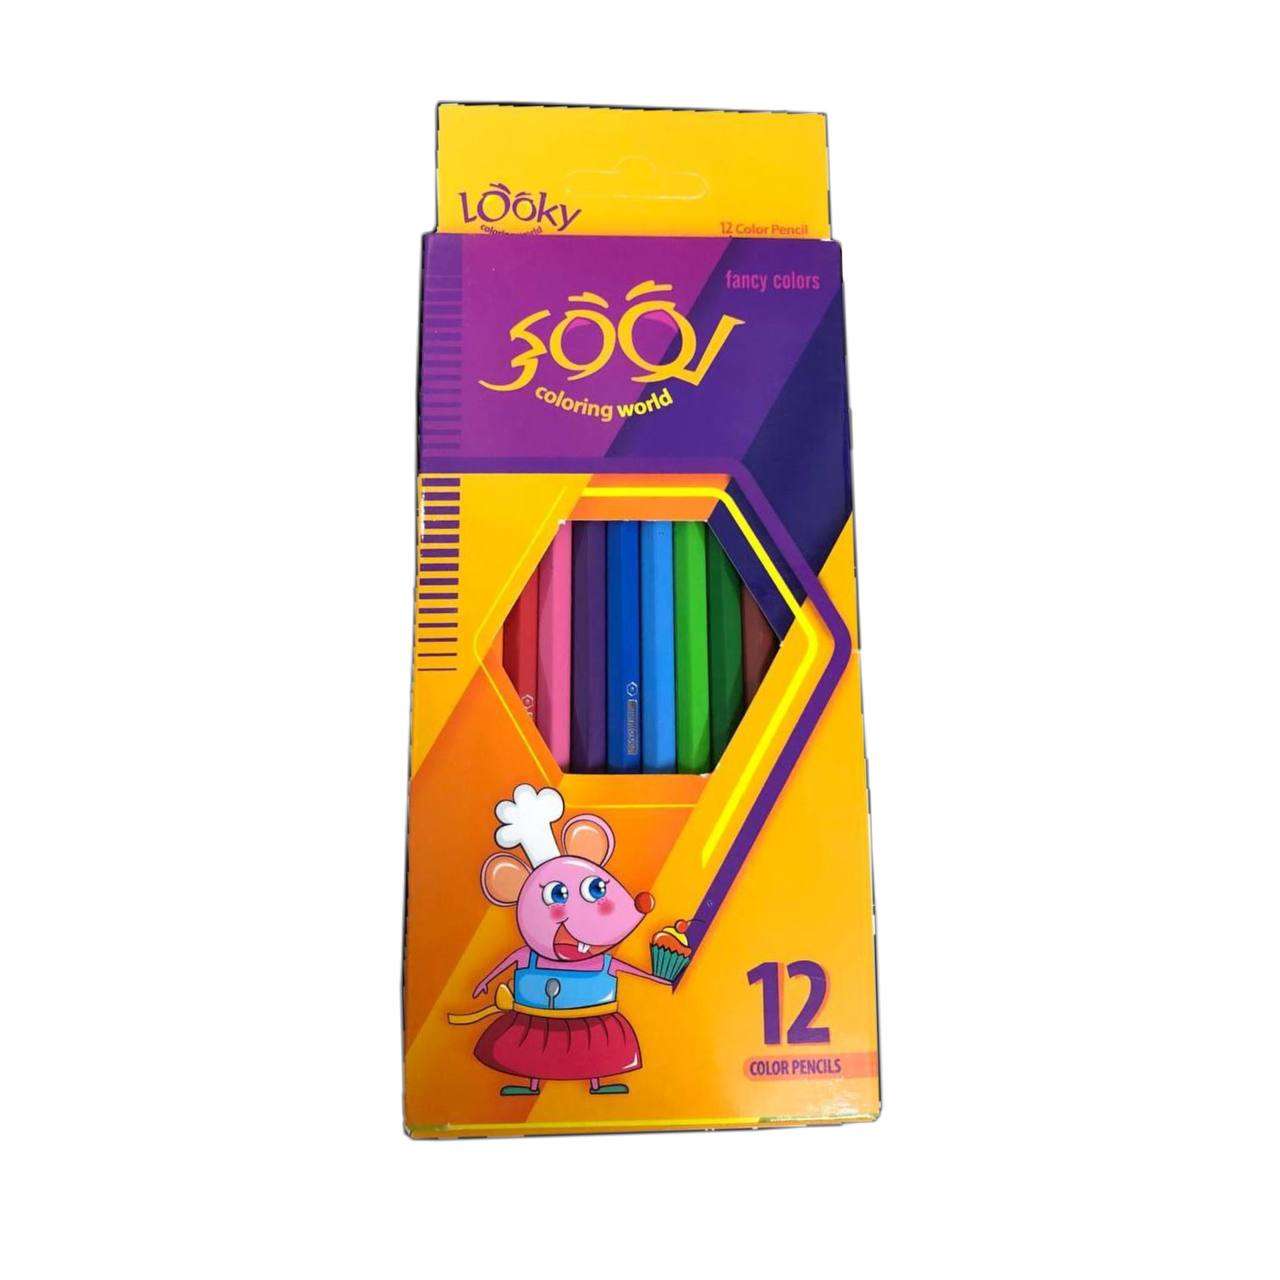 خرید انلاین مداد رنگی 12 عددی لوکی در وبسایت دوشنبه کالا